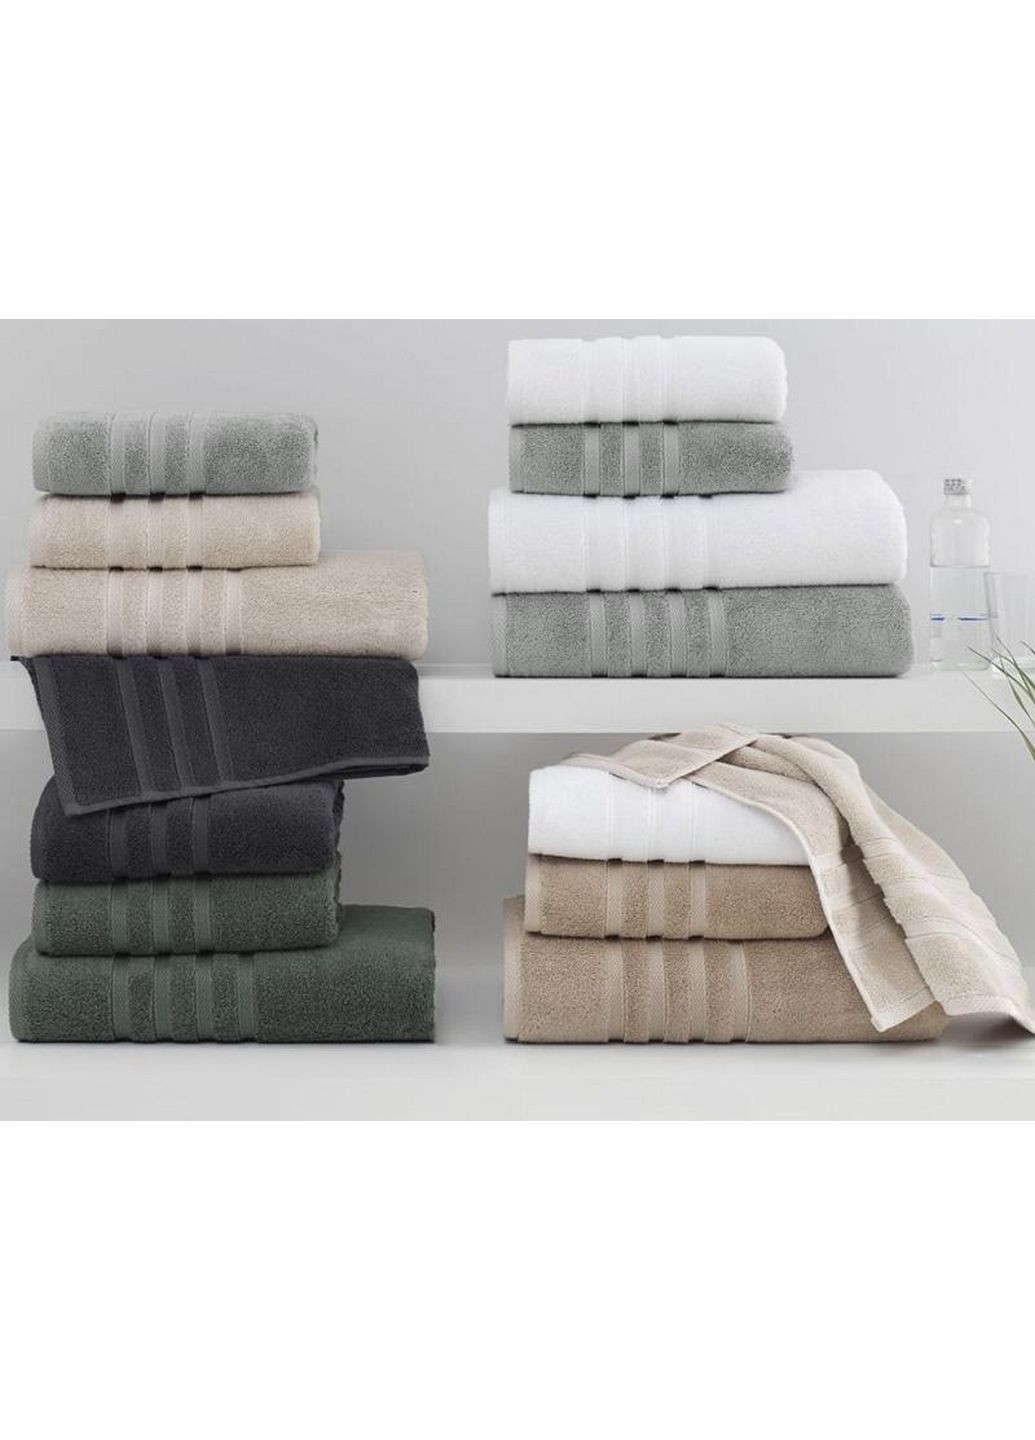 No Brand набор полотенца 2 шт. комбинированный производство - Турция